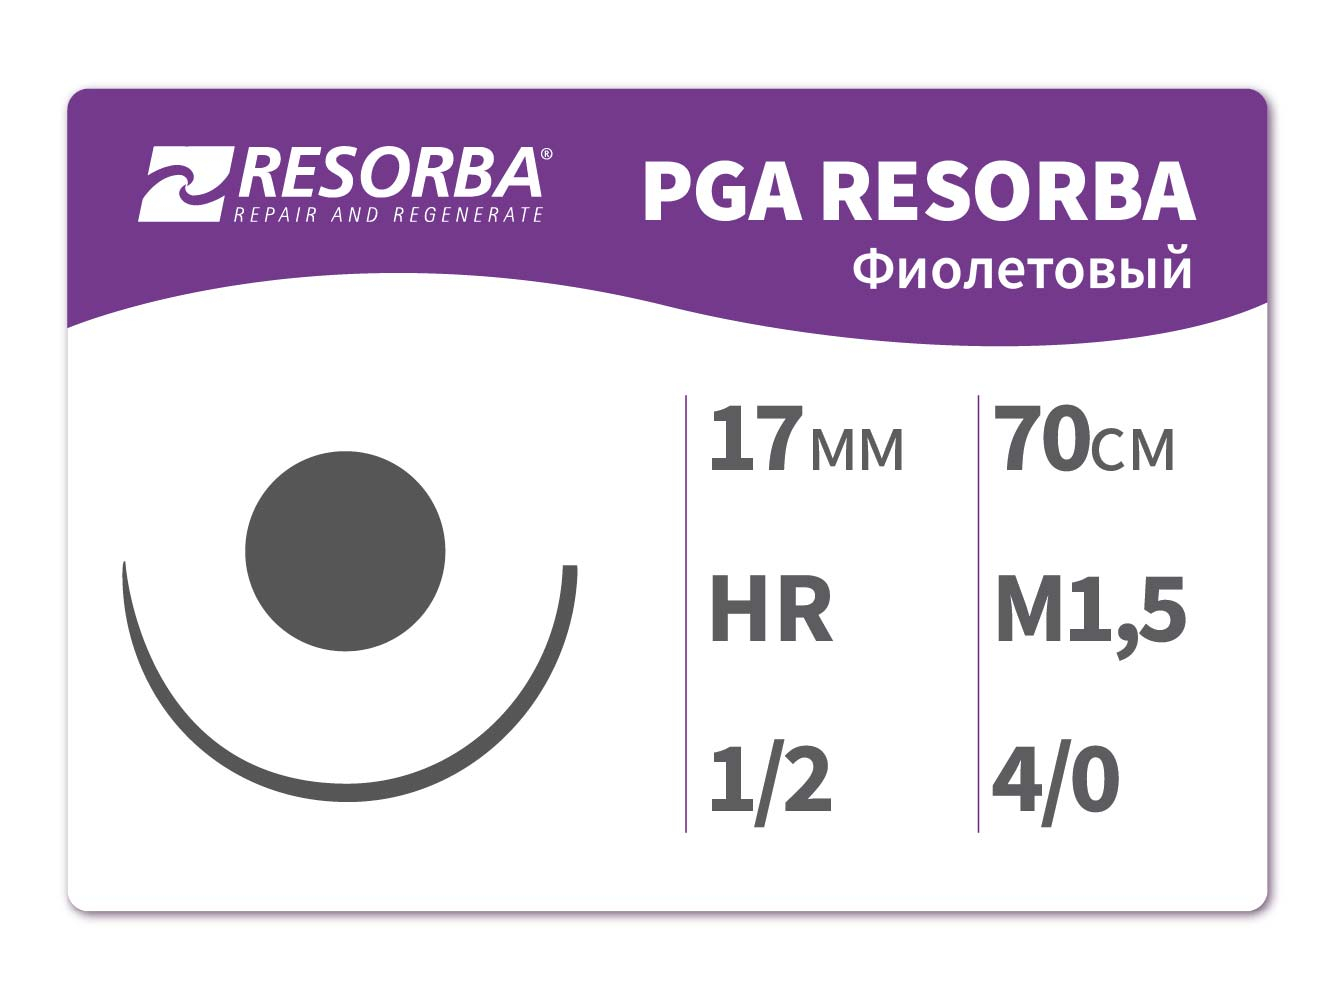 PA1025 ПГА-Ресорба фиолетовая М1.5 (4/0) 70 см HR17, RESORBA (Германия)